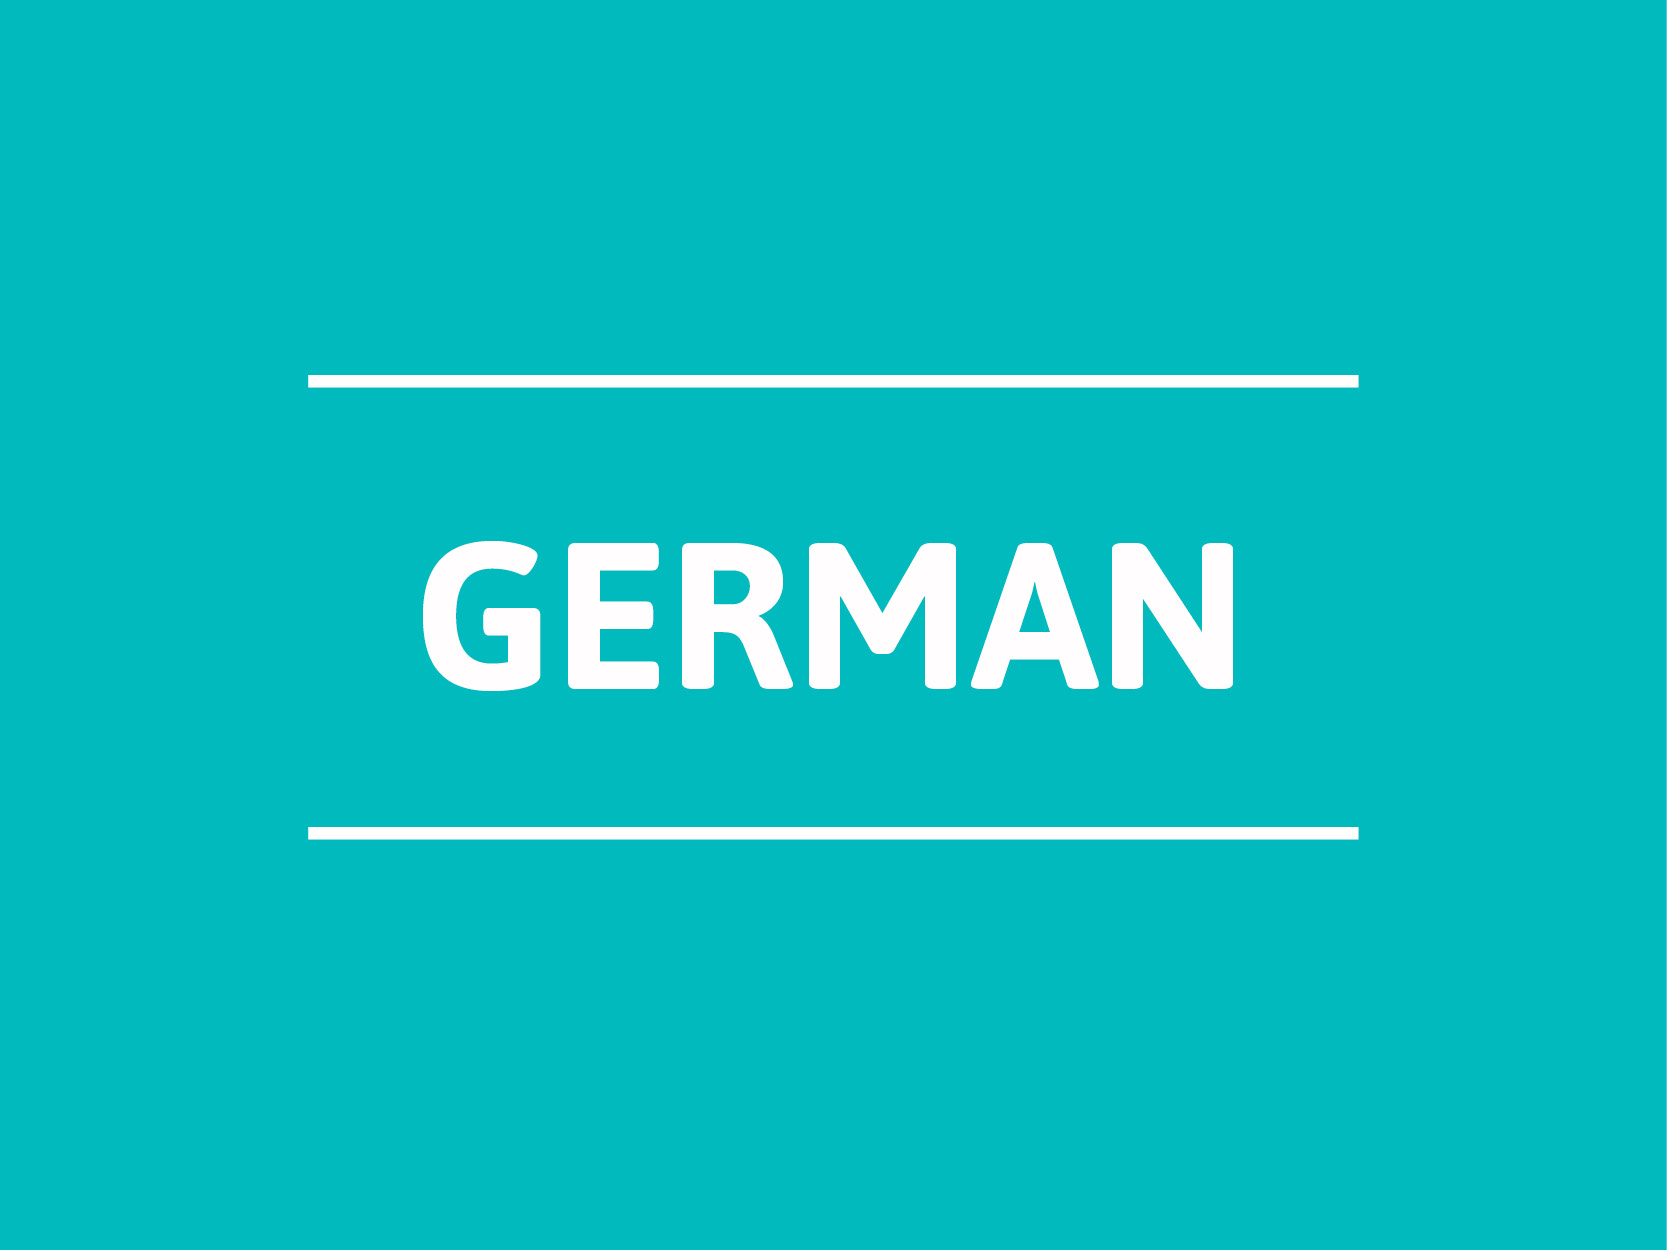 Translation internships for German students